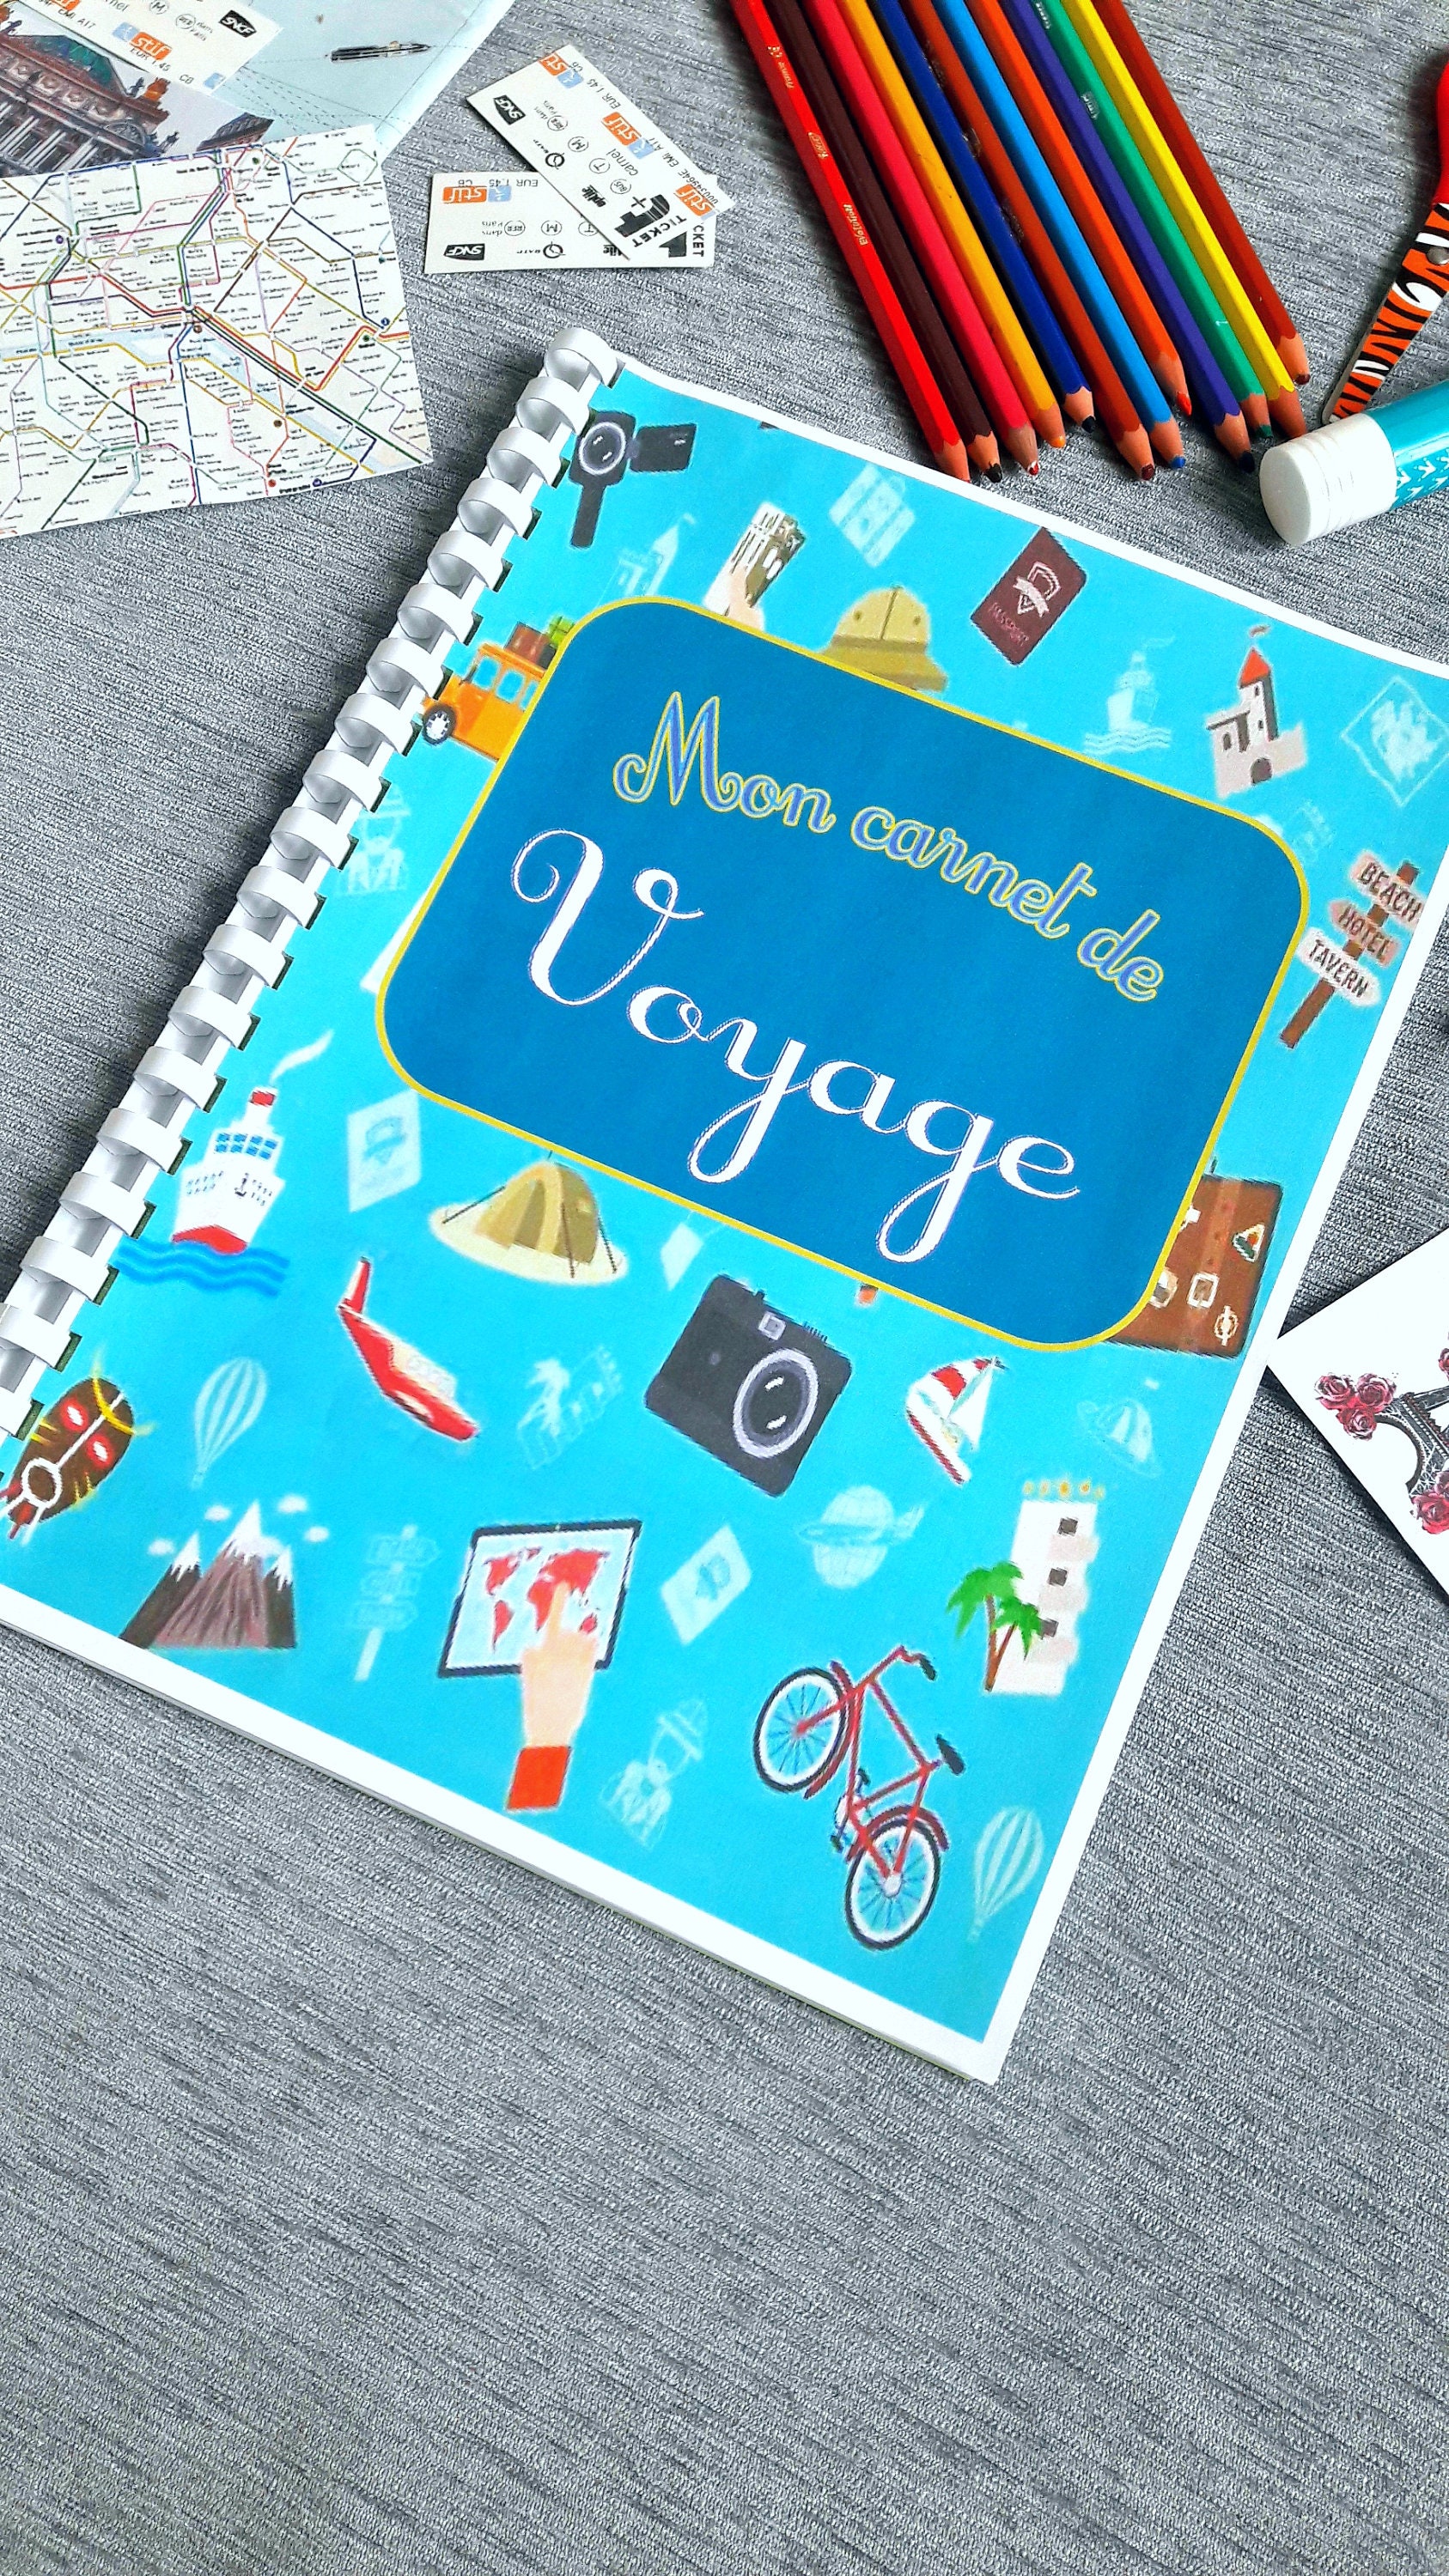 Carnet De Voyage à Remplir, Travel Log Graphic by Little-Learners